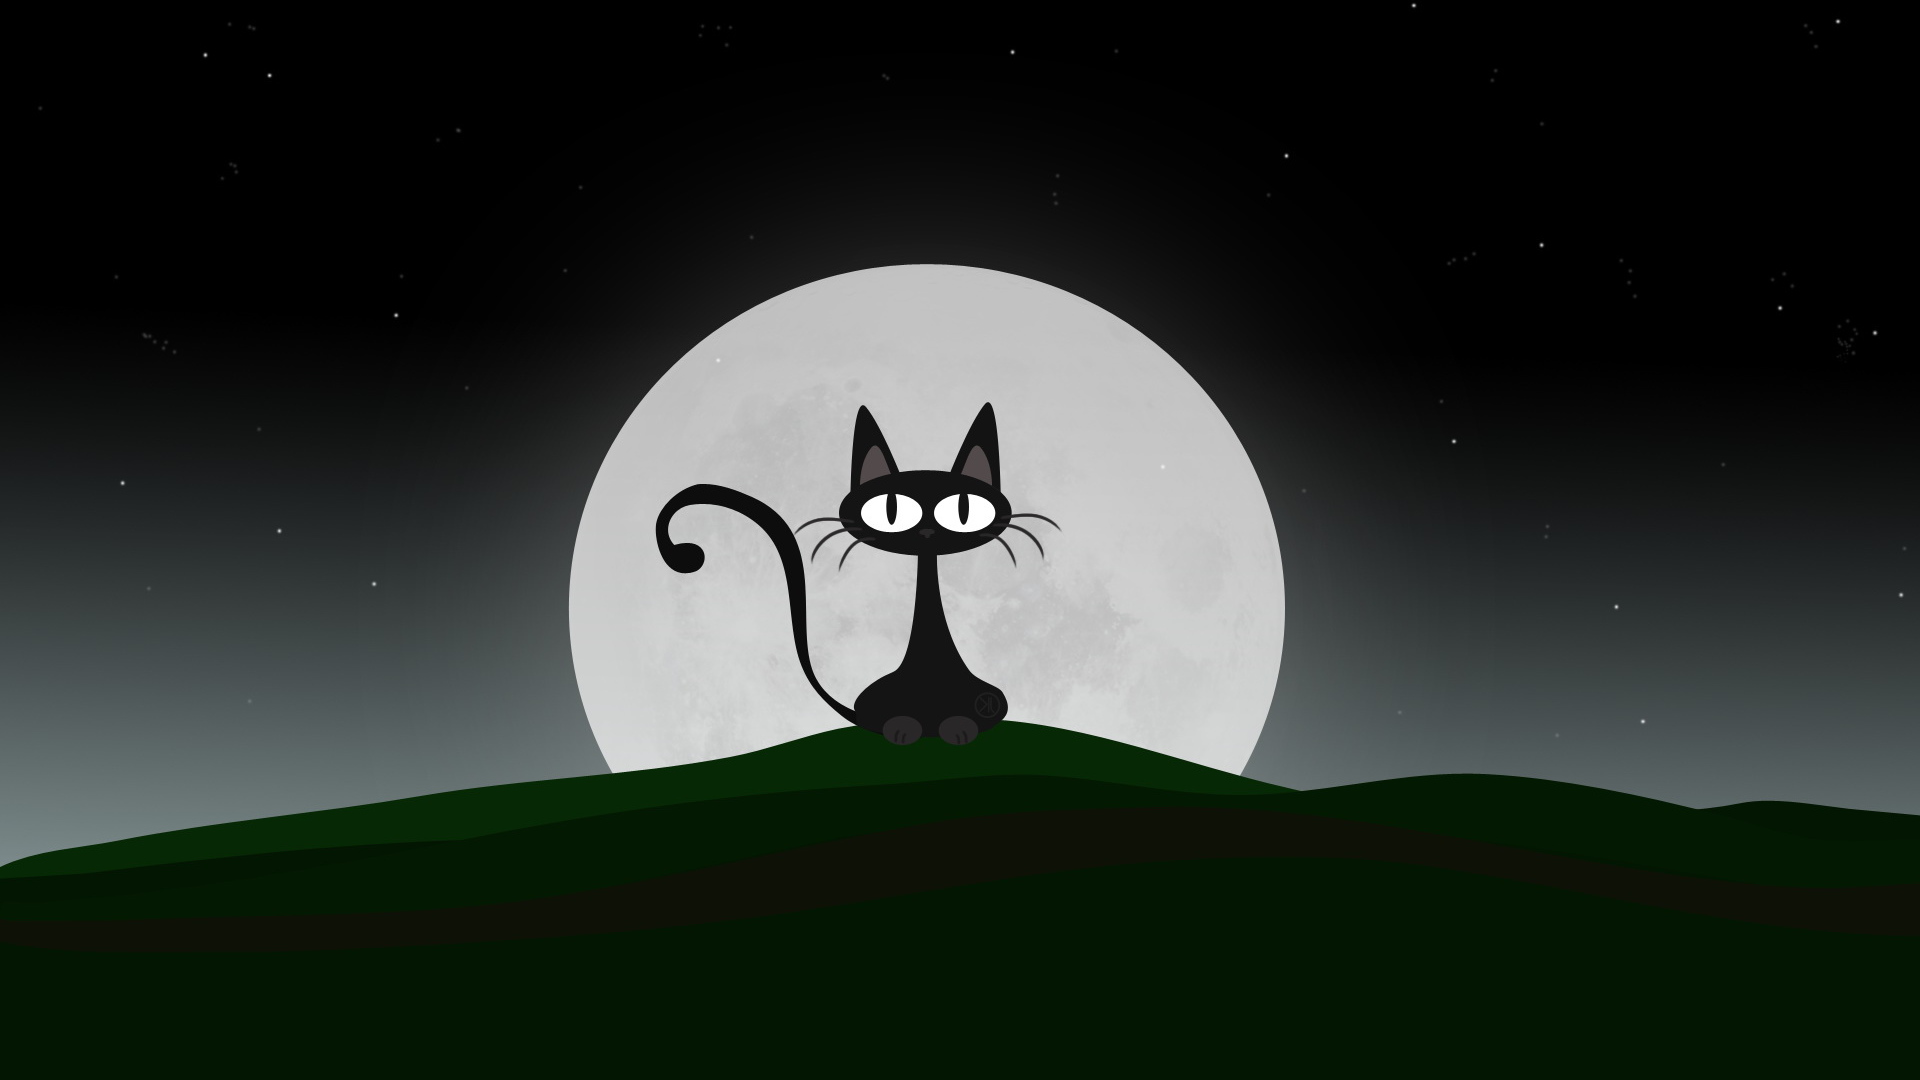 Ночная кошка